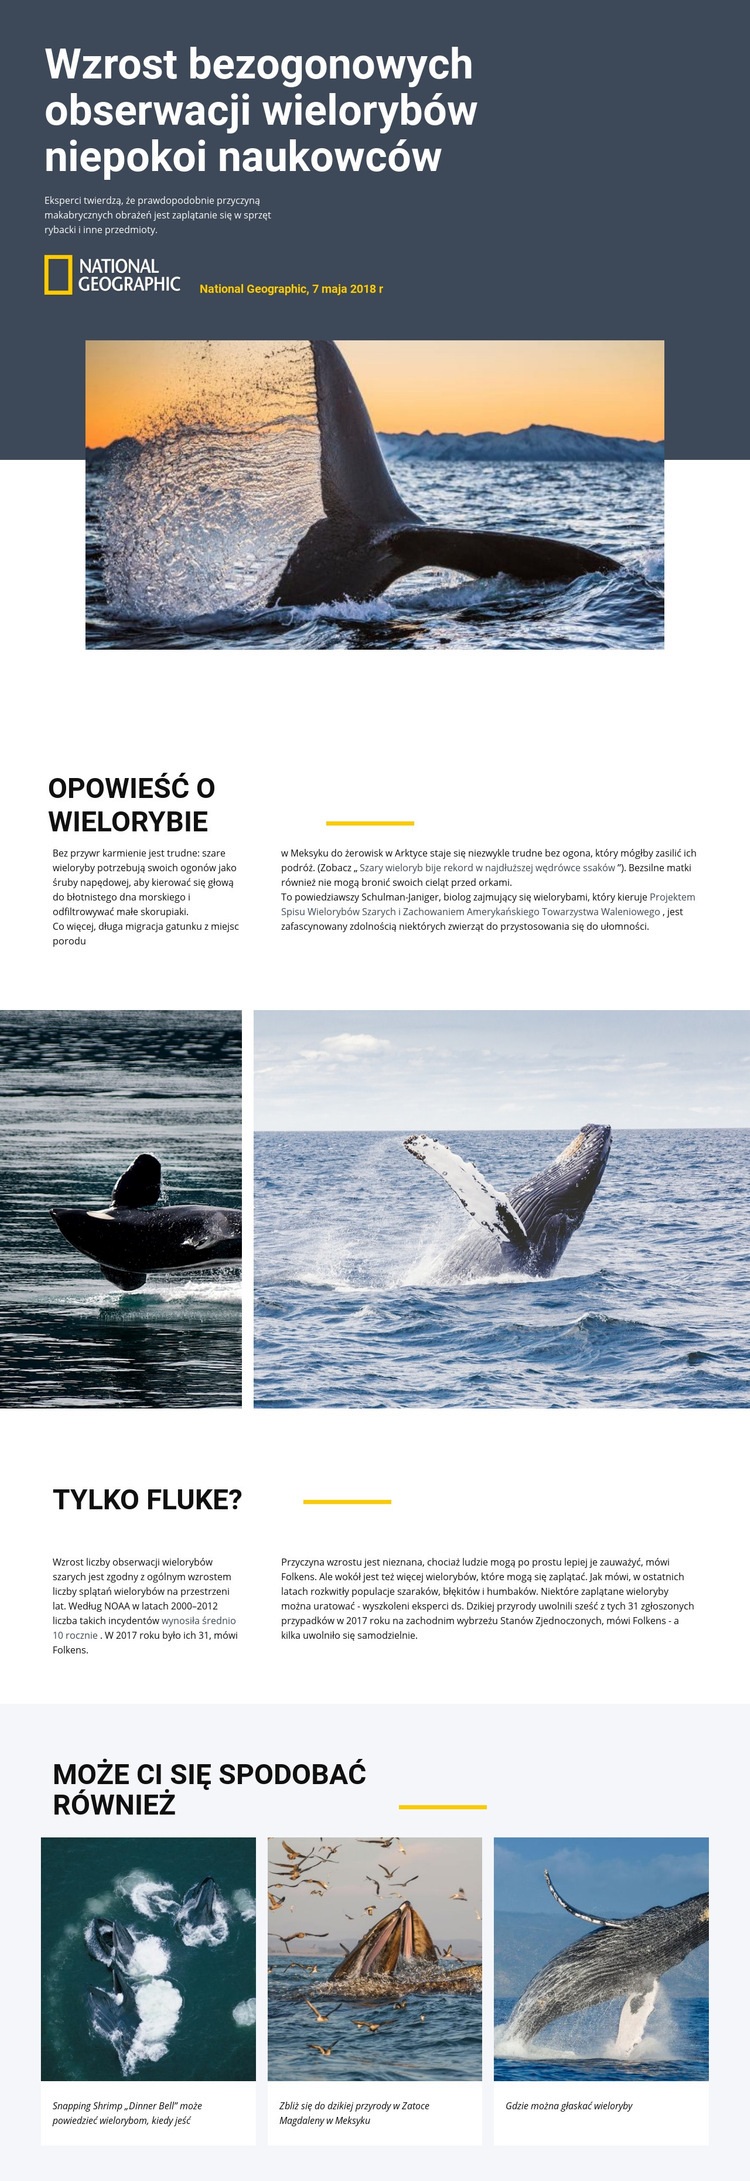 Centrum obserwacji wielorybów Projekt strony internetowej